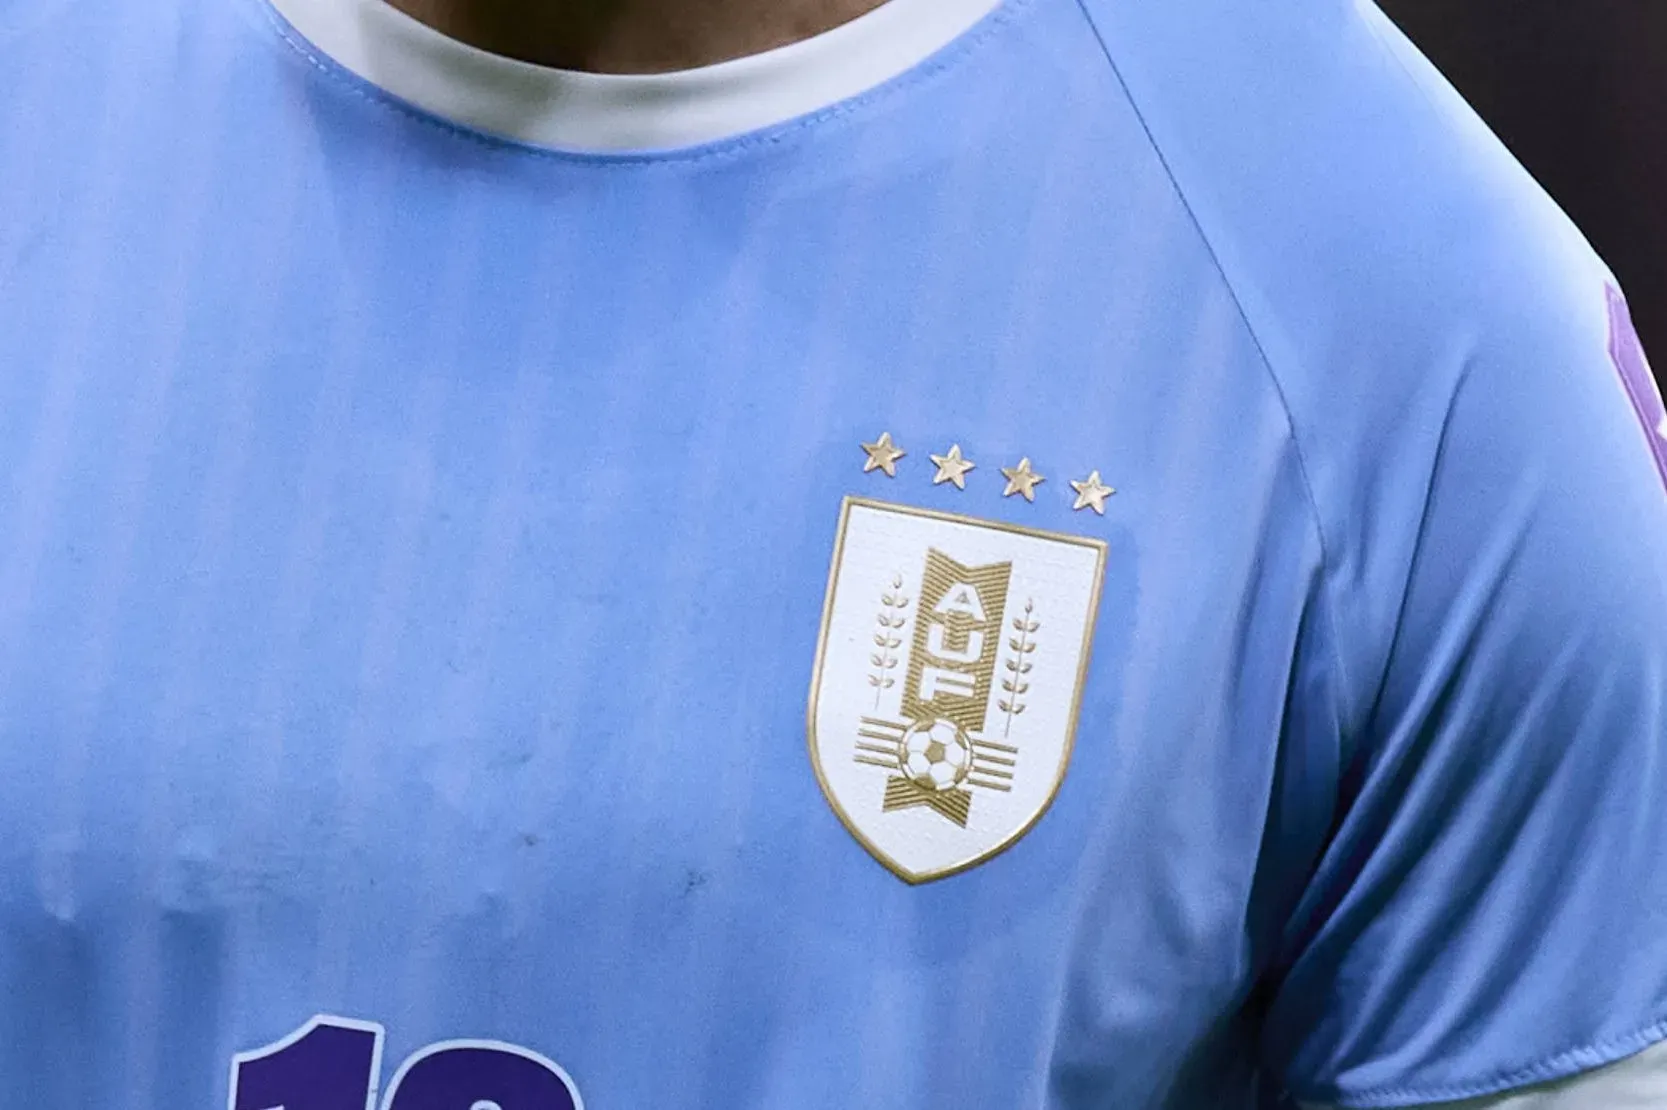 La Selección de Uruguay exhibe cuatro estrellas en su camiseta alusivas a lo que considera como cuatro títulos mundiales.